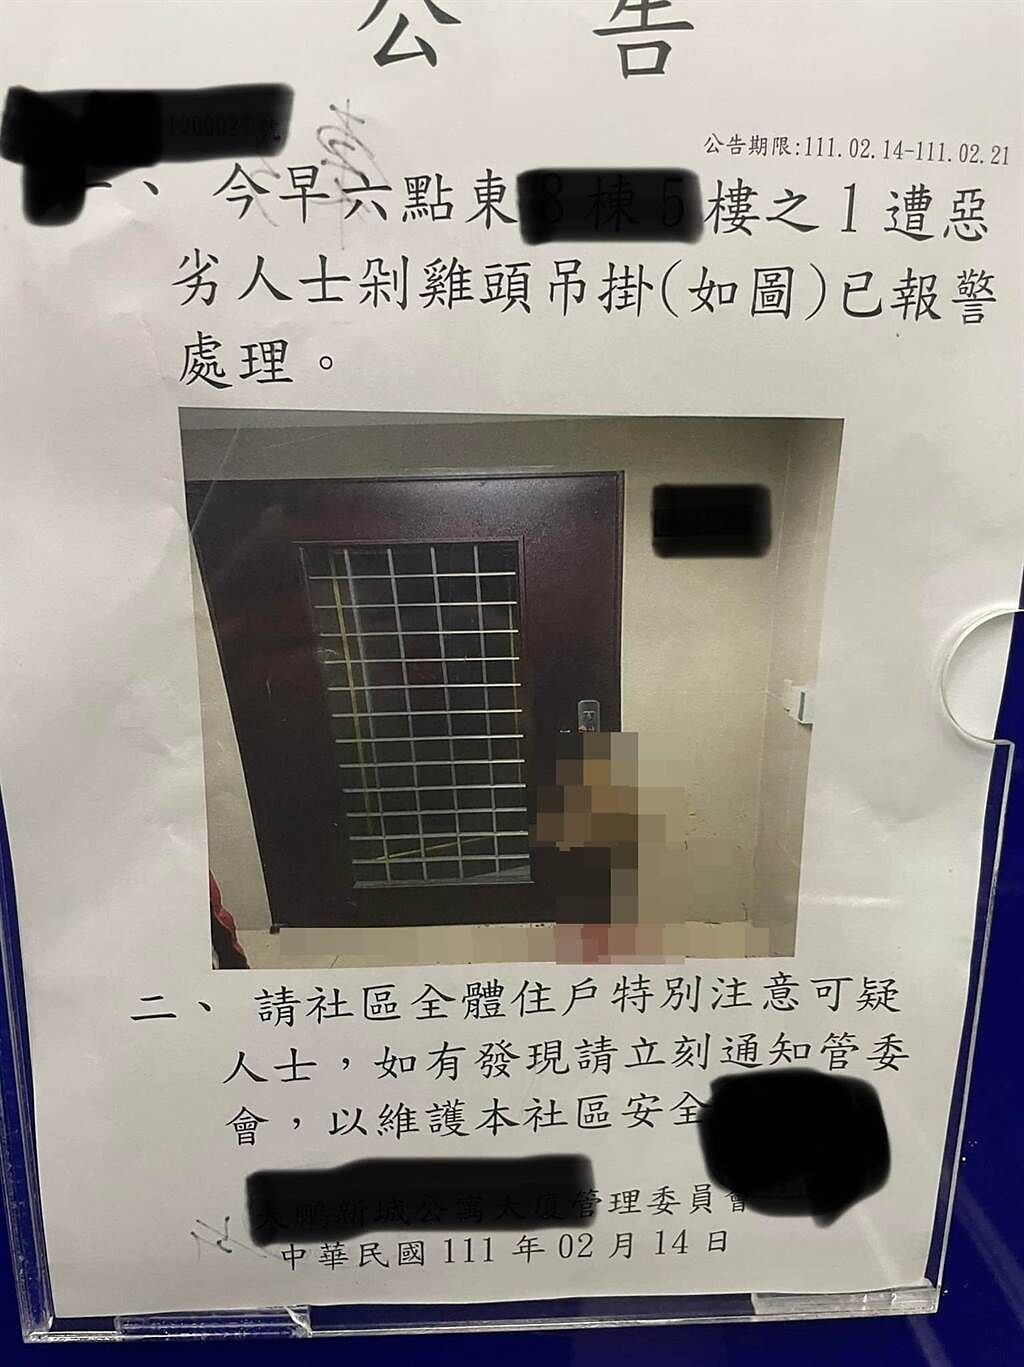 社區管委會在電梯張貼的可怕公告，「今早六點東XXX樓之1遭惡劣人士剁雞頭吊掛，已報警處理」。(翻攝自 臉書社團「爆廢公社公開版」)